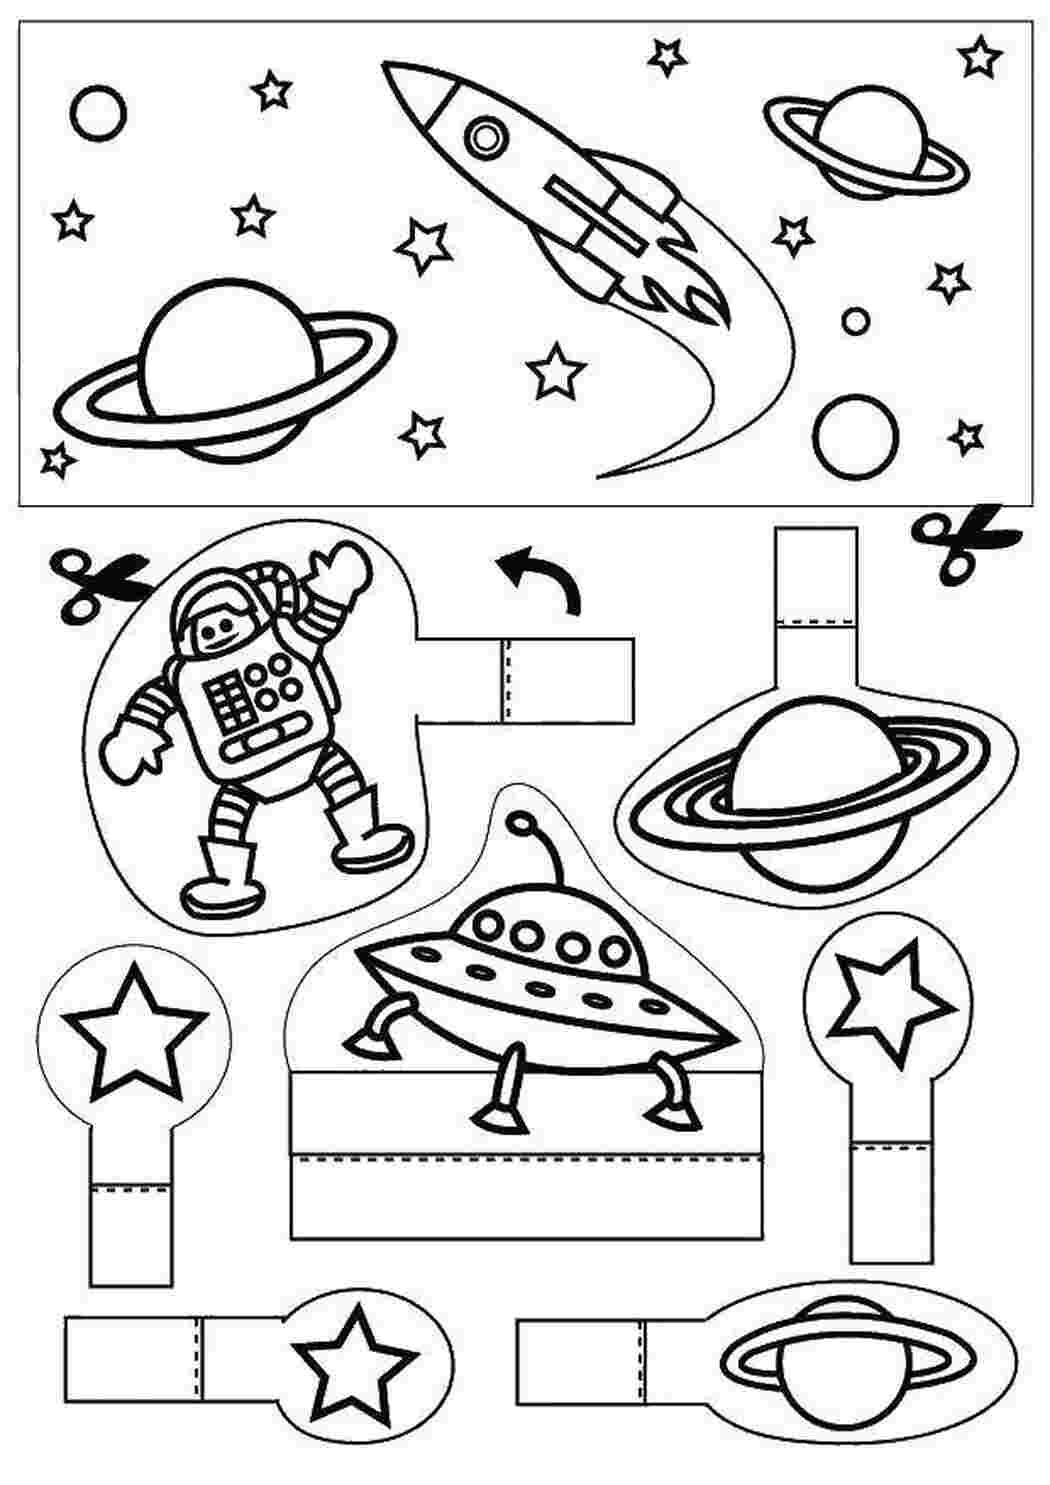 Задания ко дню космонавтики. Космос раскраска для детей. Раскраска. В космосе. Космос задания для детей. Космос задания для дошкольников.